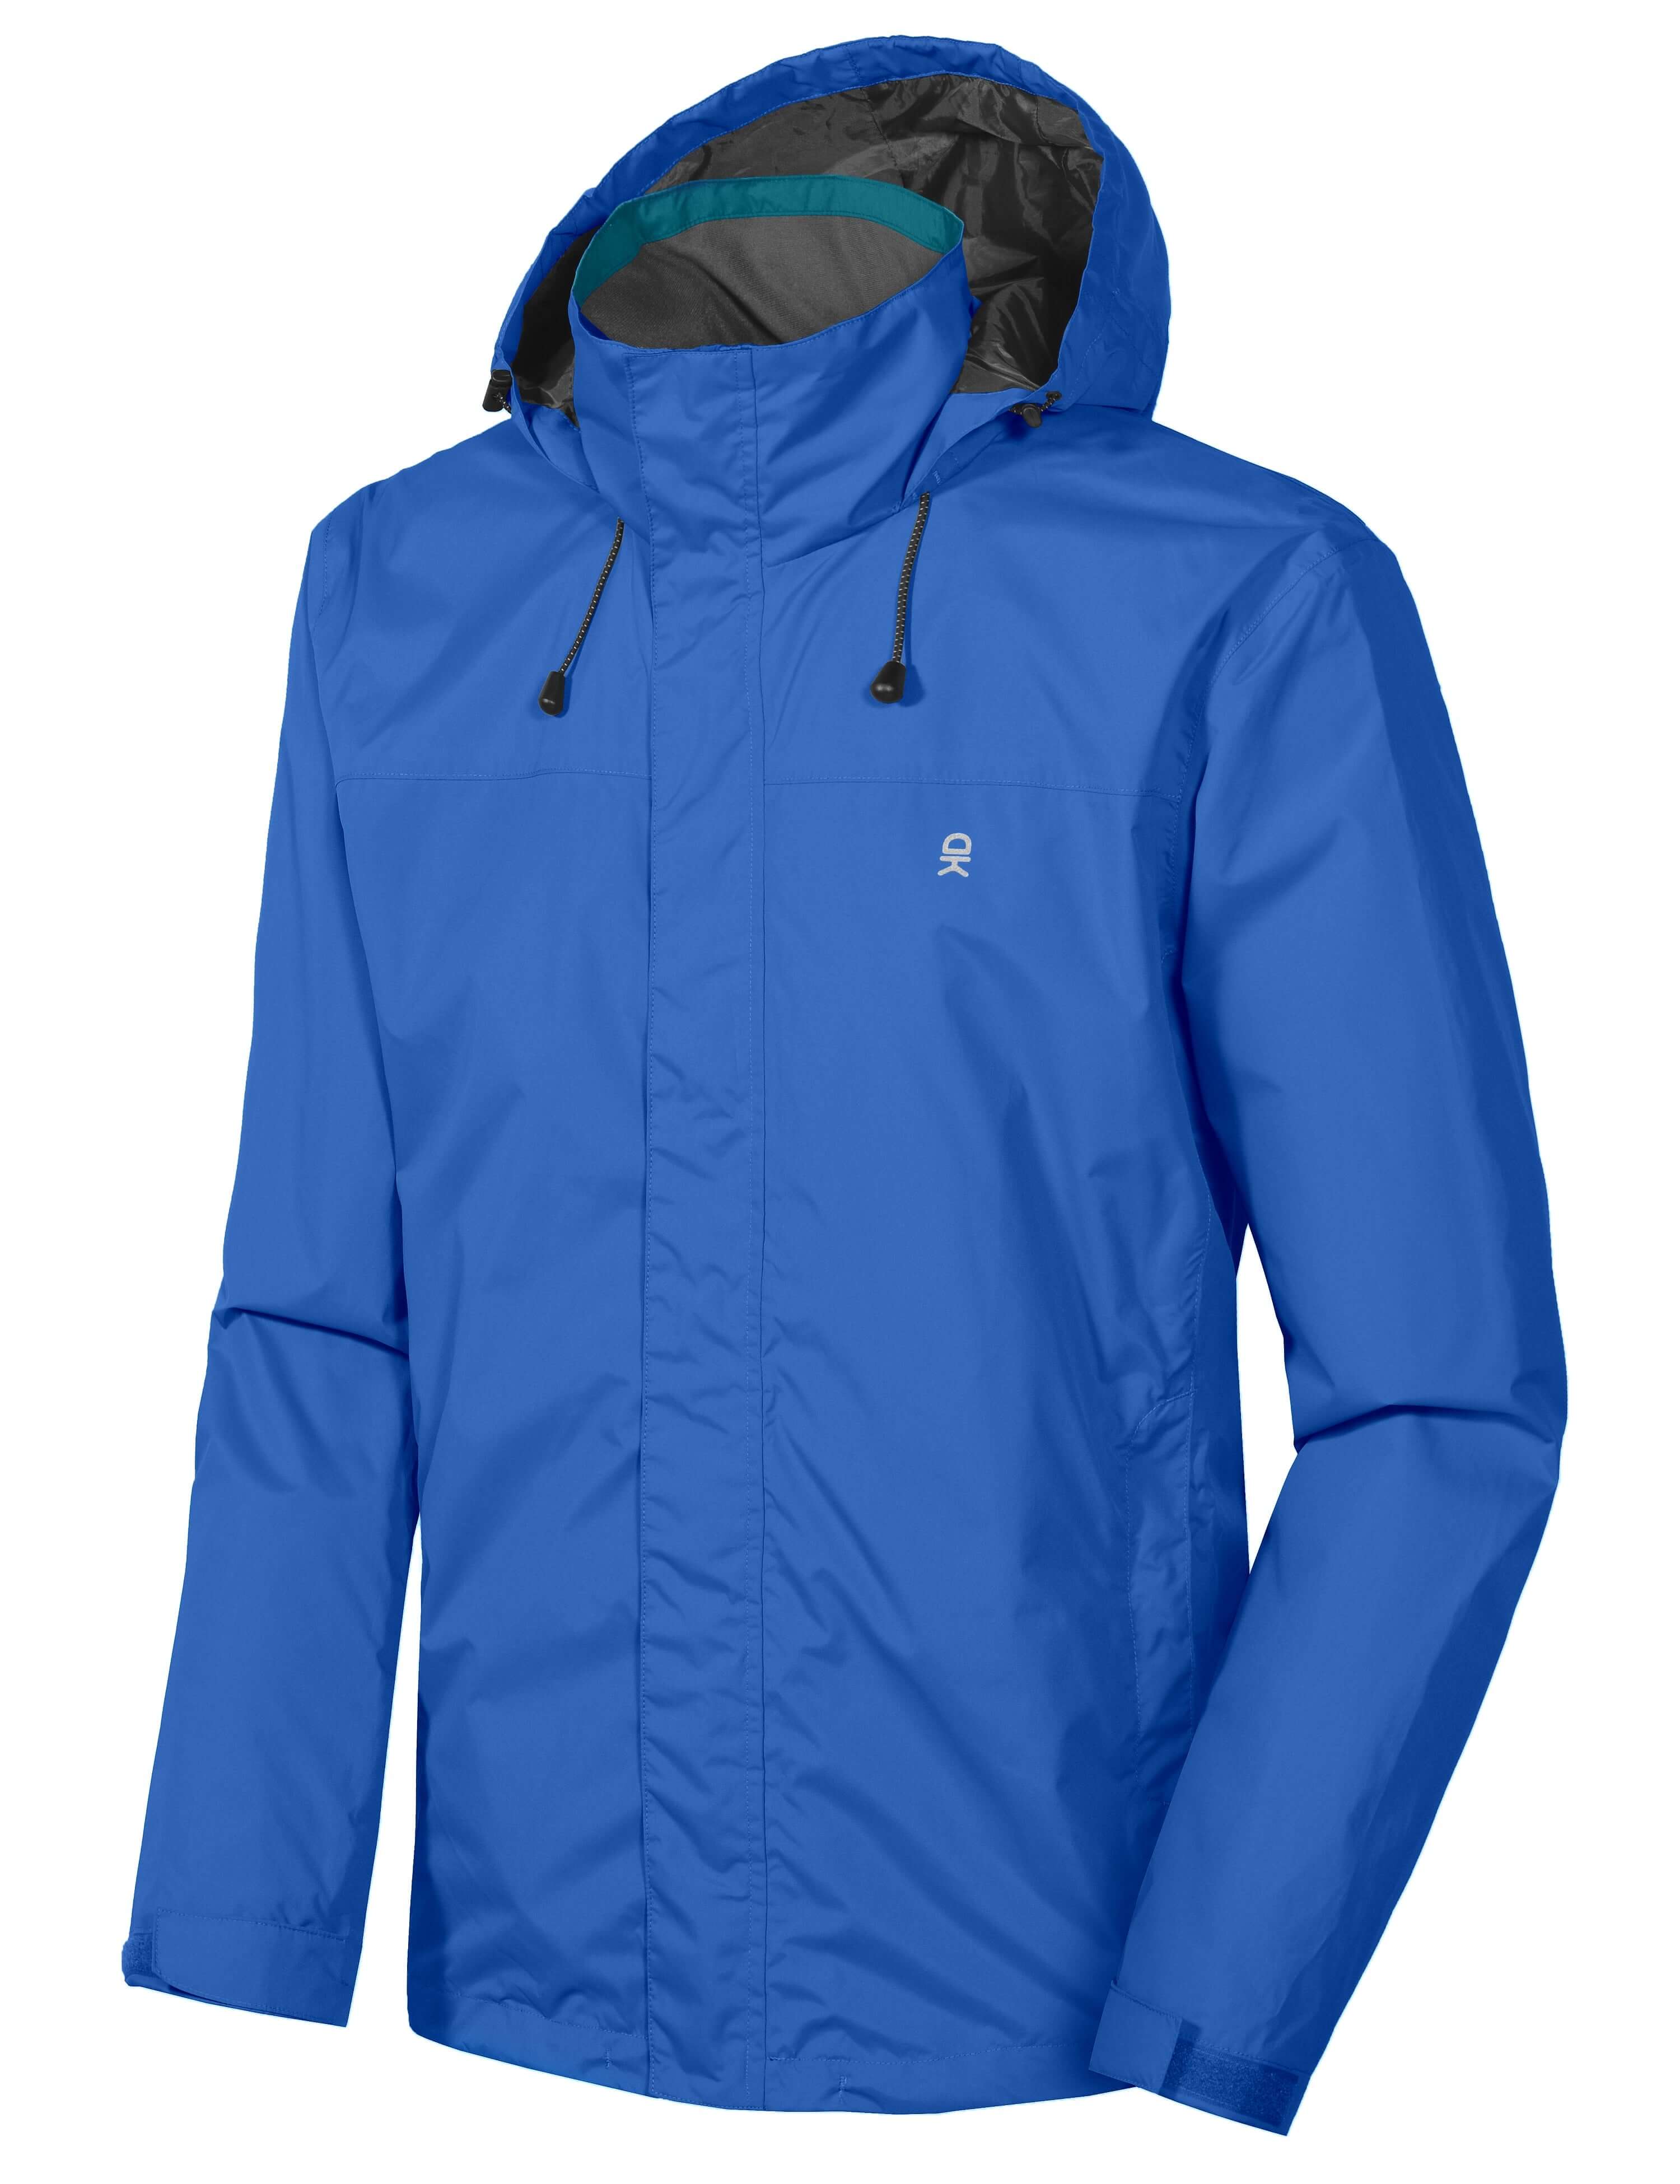 Men's Waterproof Outdoor Lightweight Hiking Rain Jacket